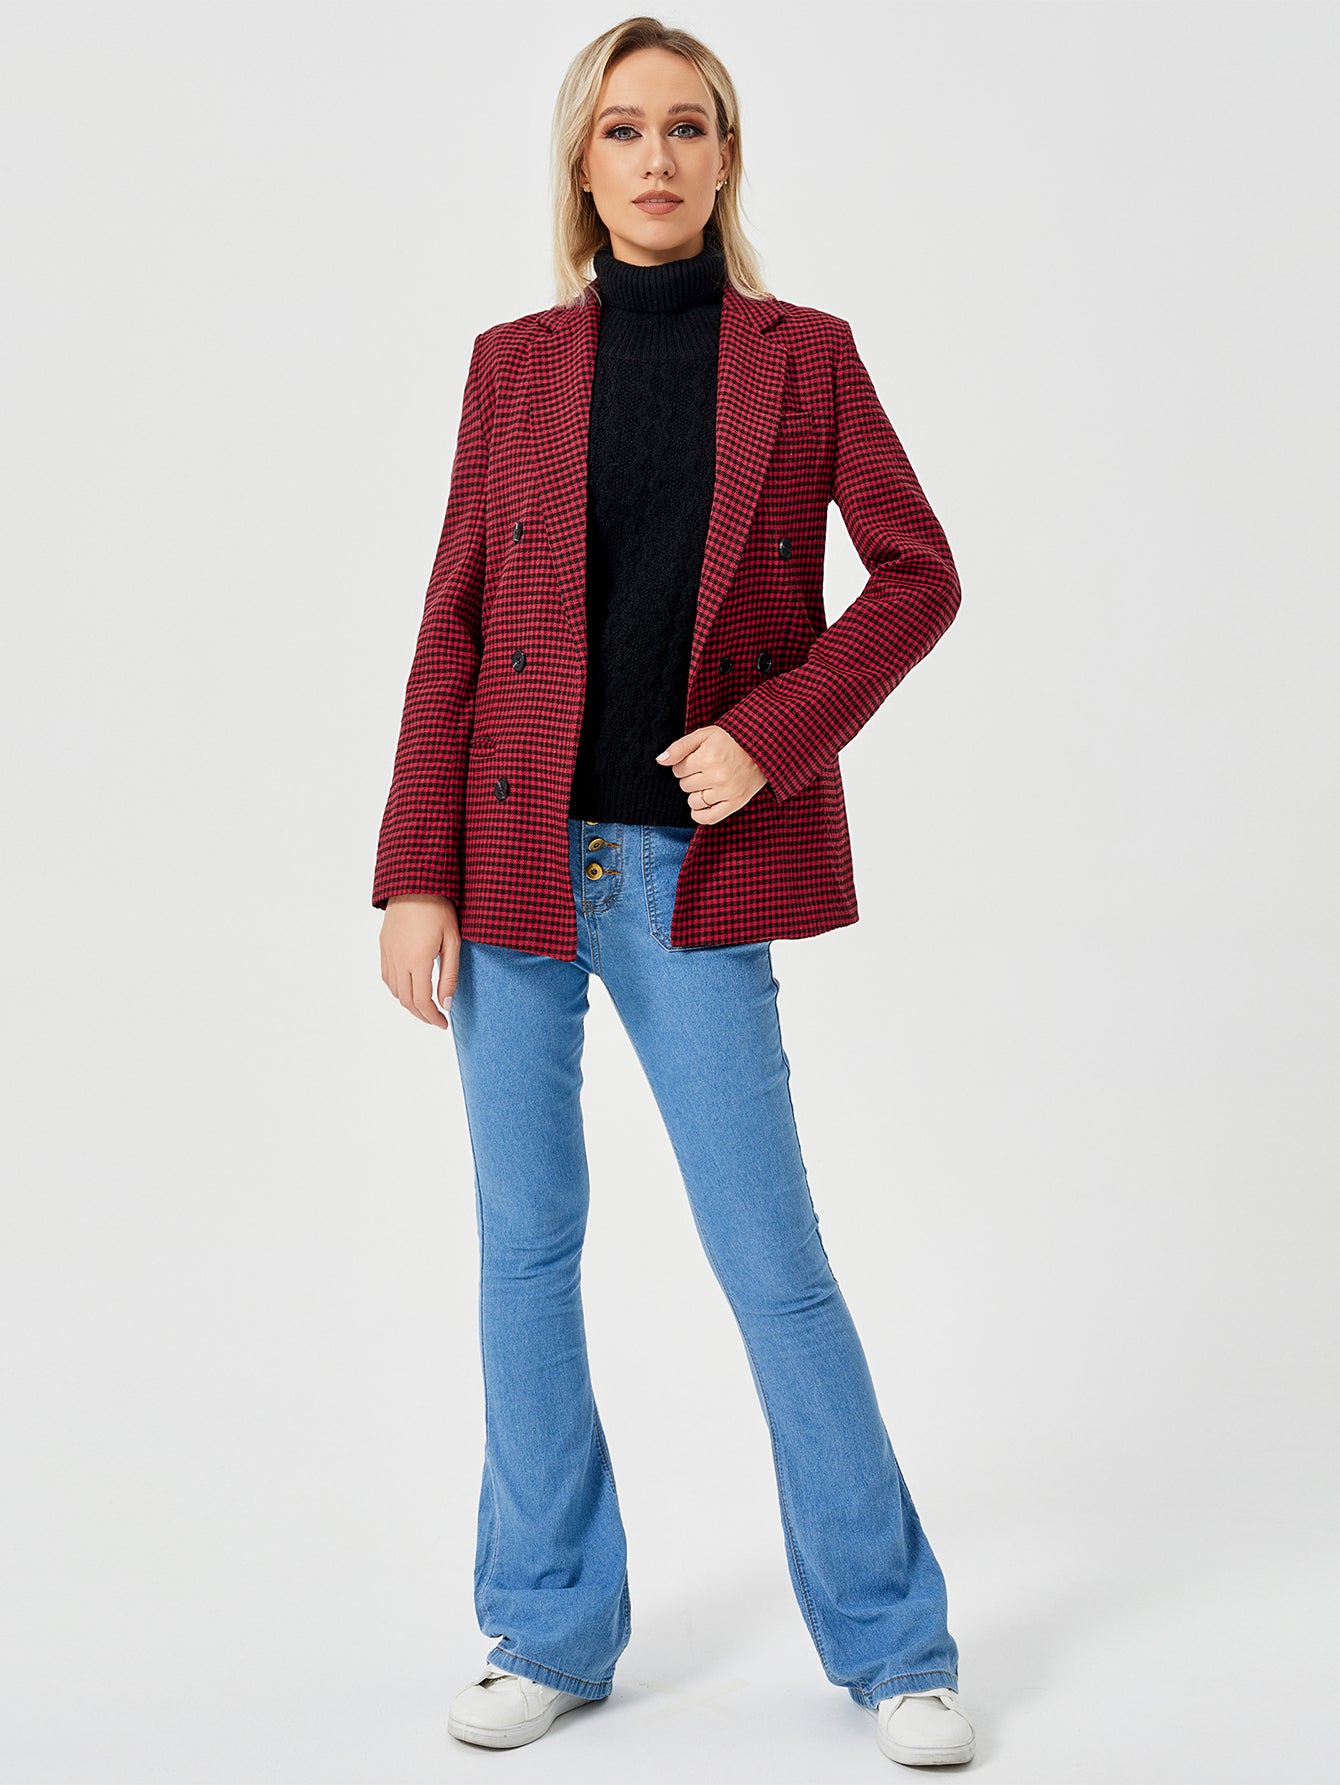 Women's Casual Blazer Jacket  Long Sleeve Work 0ffice Blazer Lapel  Jacket - Carvan Mart